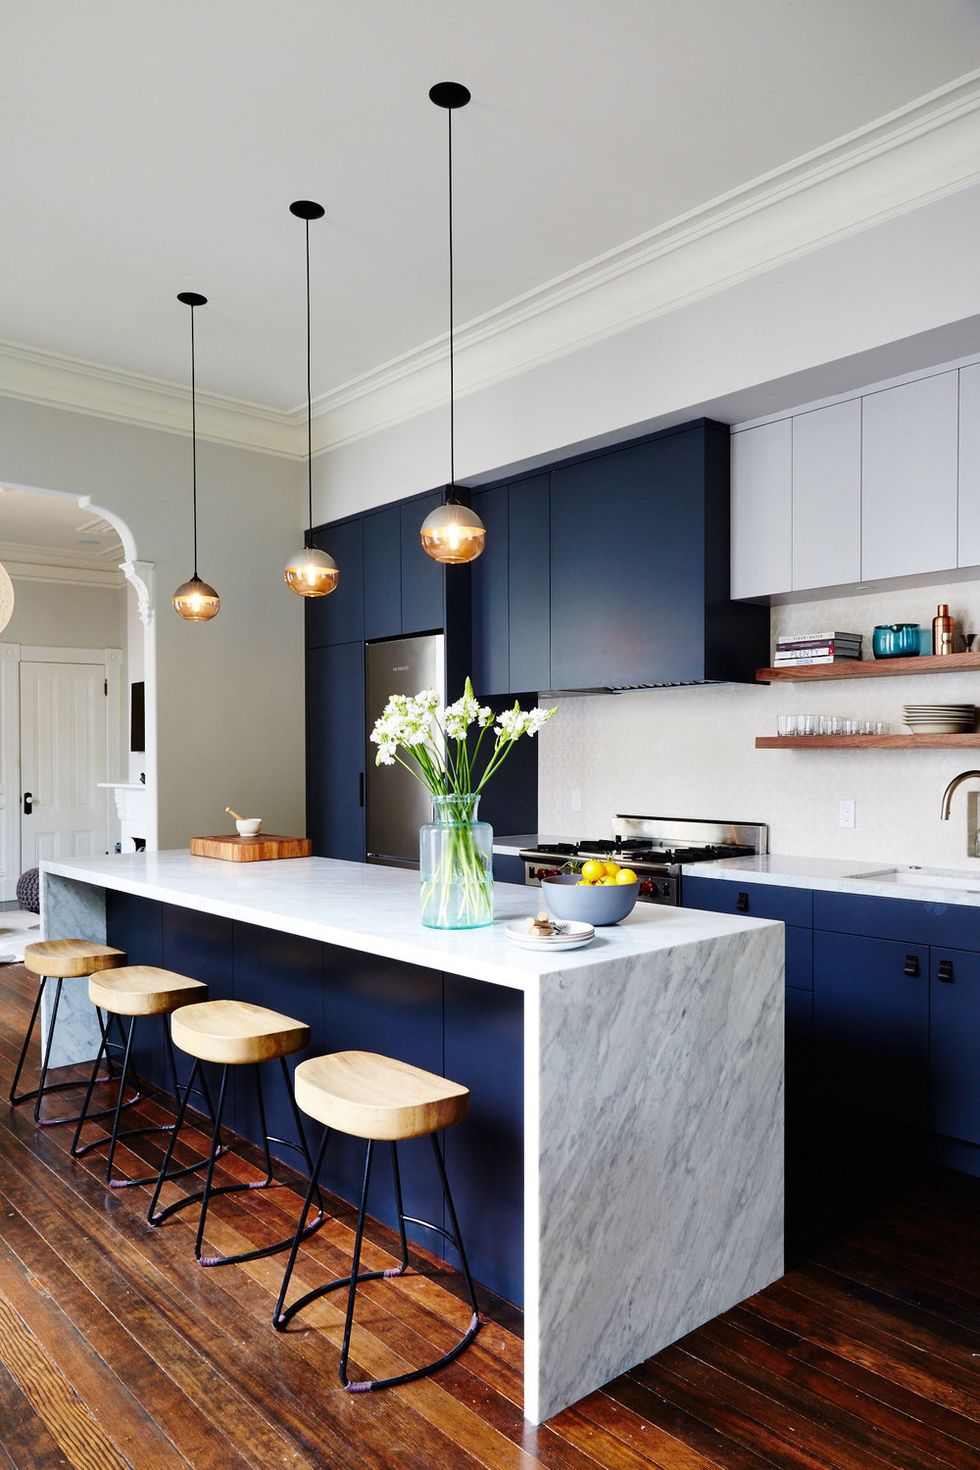 10 ý tưởng phối màu tủ bếp đáng thử cho không gian nấu nướng hiện đại